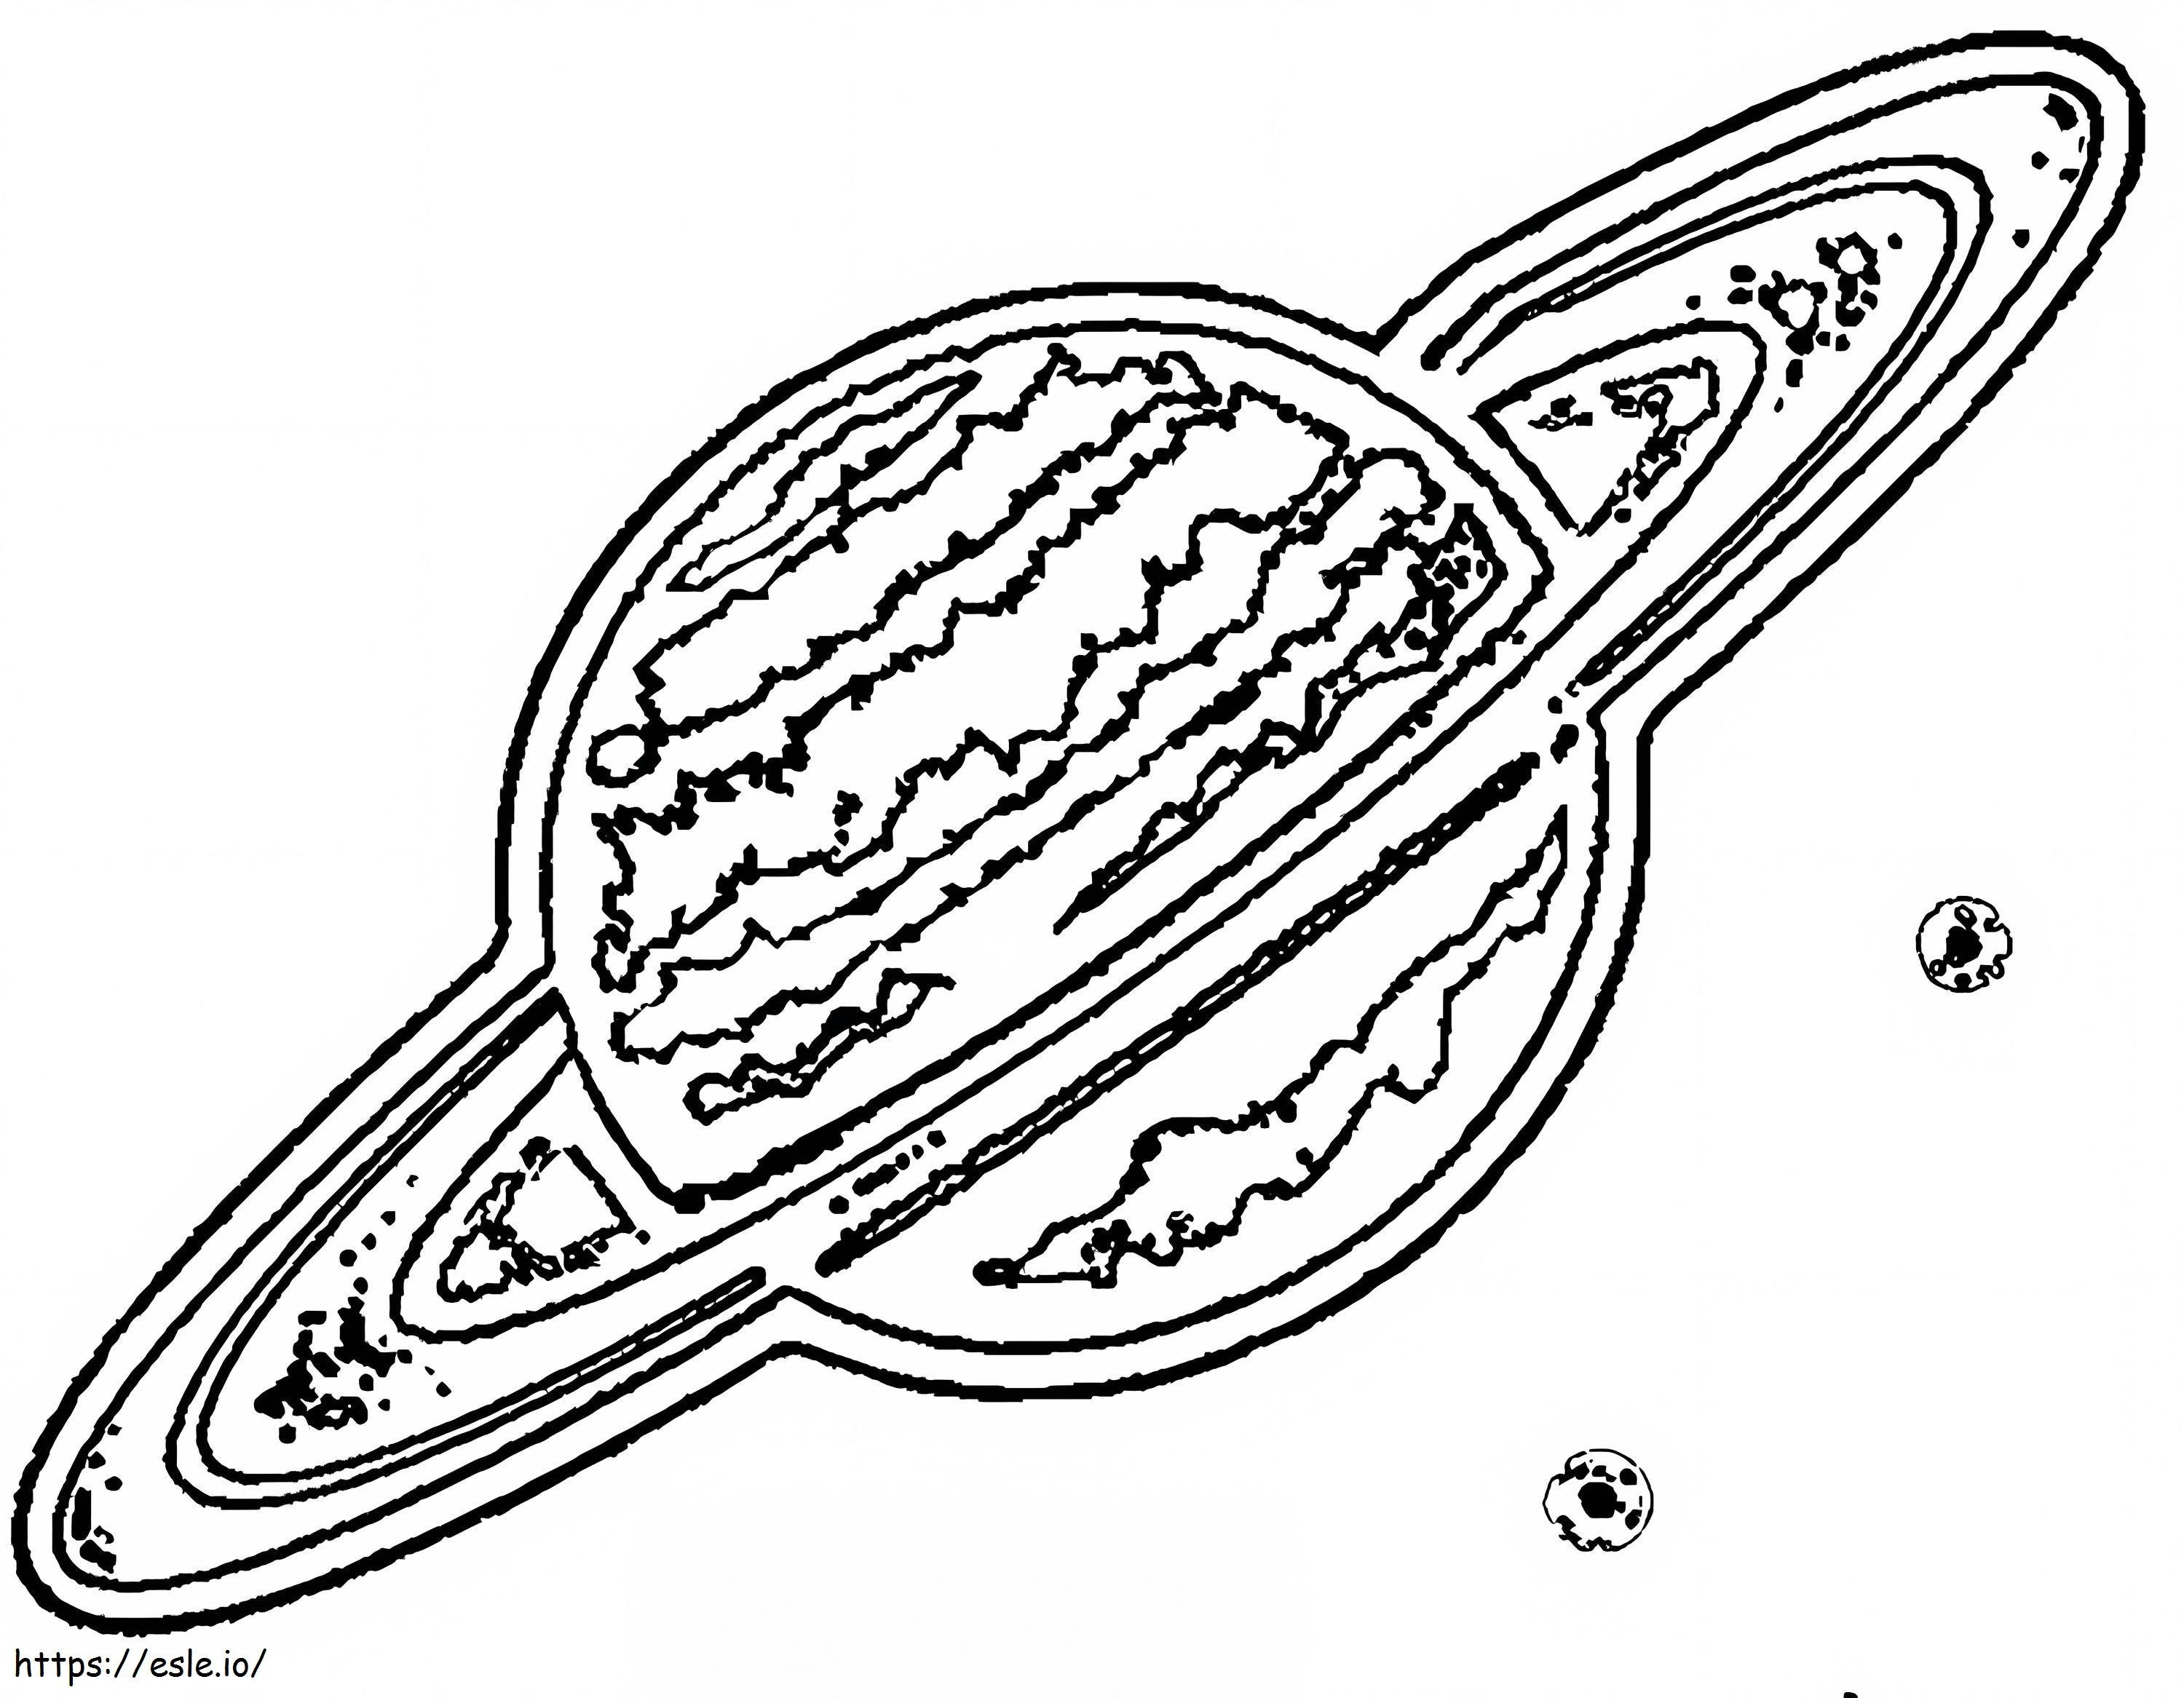 Coloriage Planète Saturne à imprimer dessin